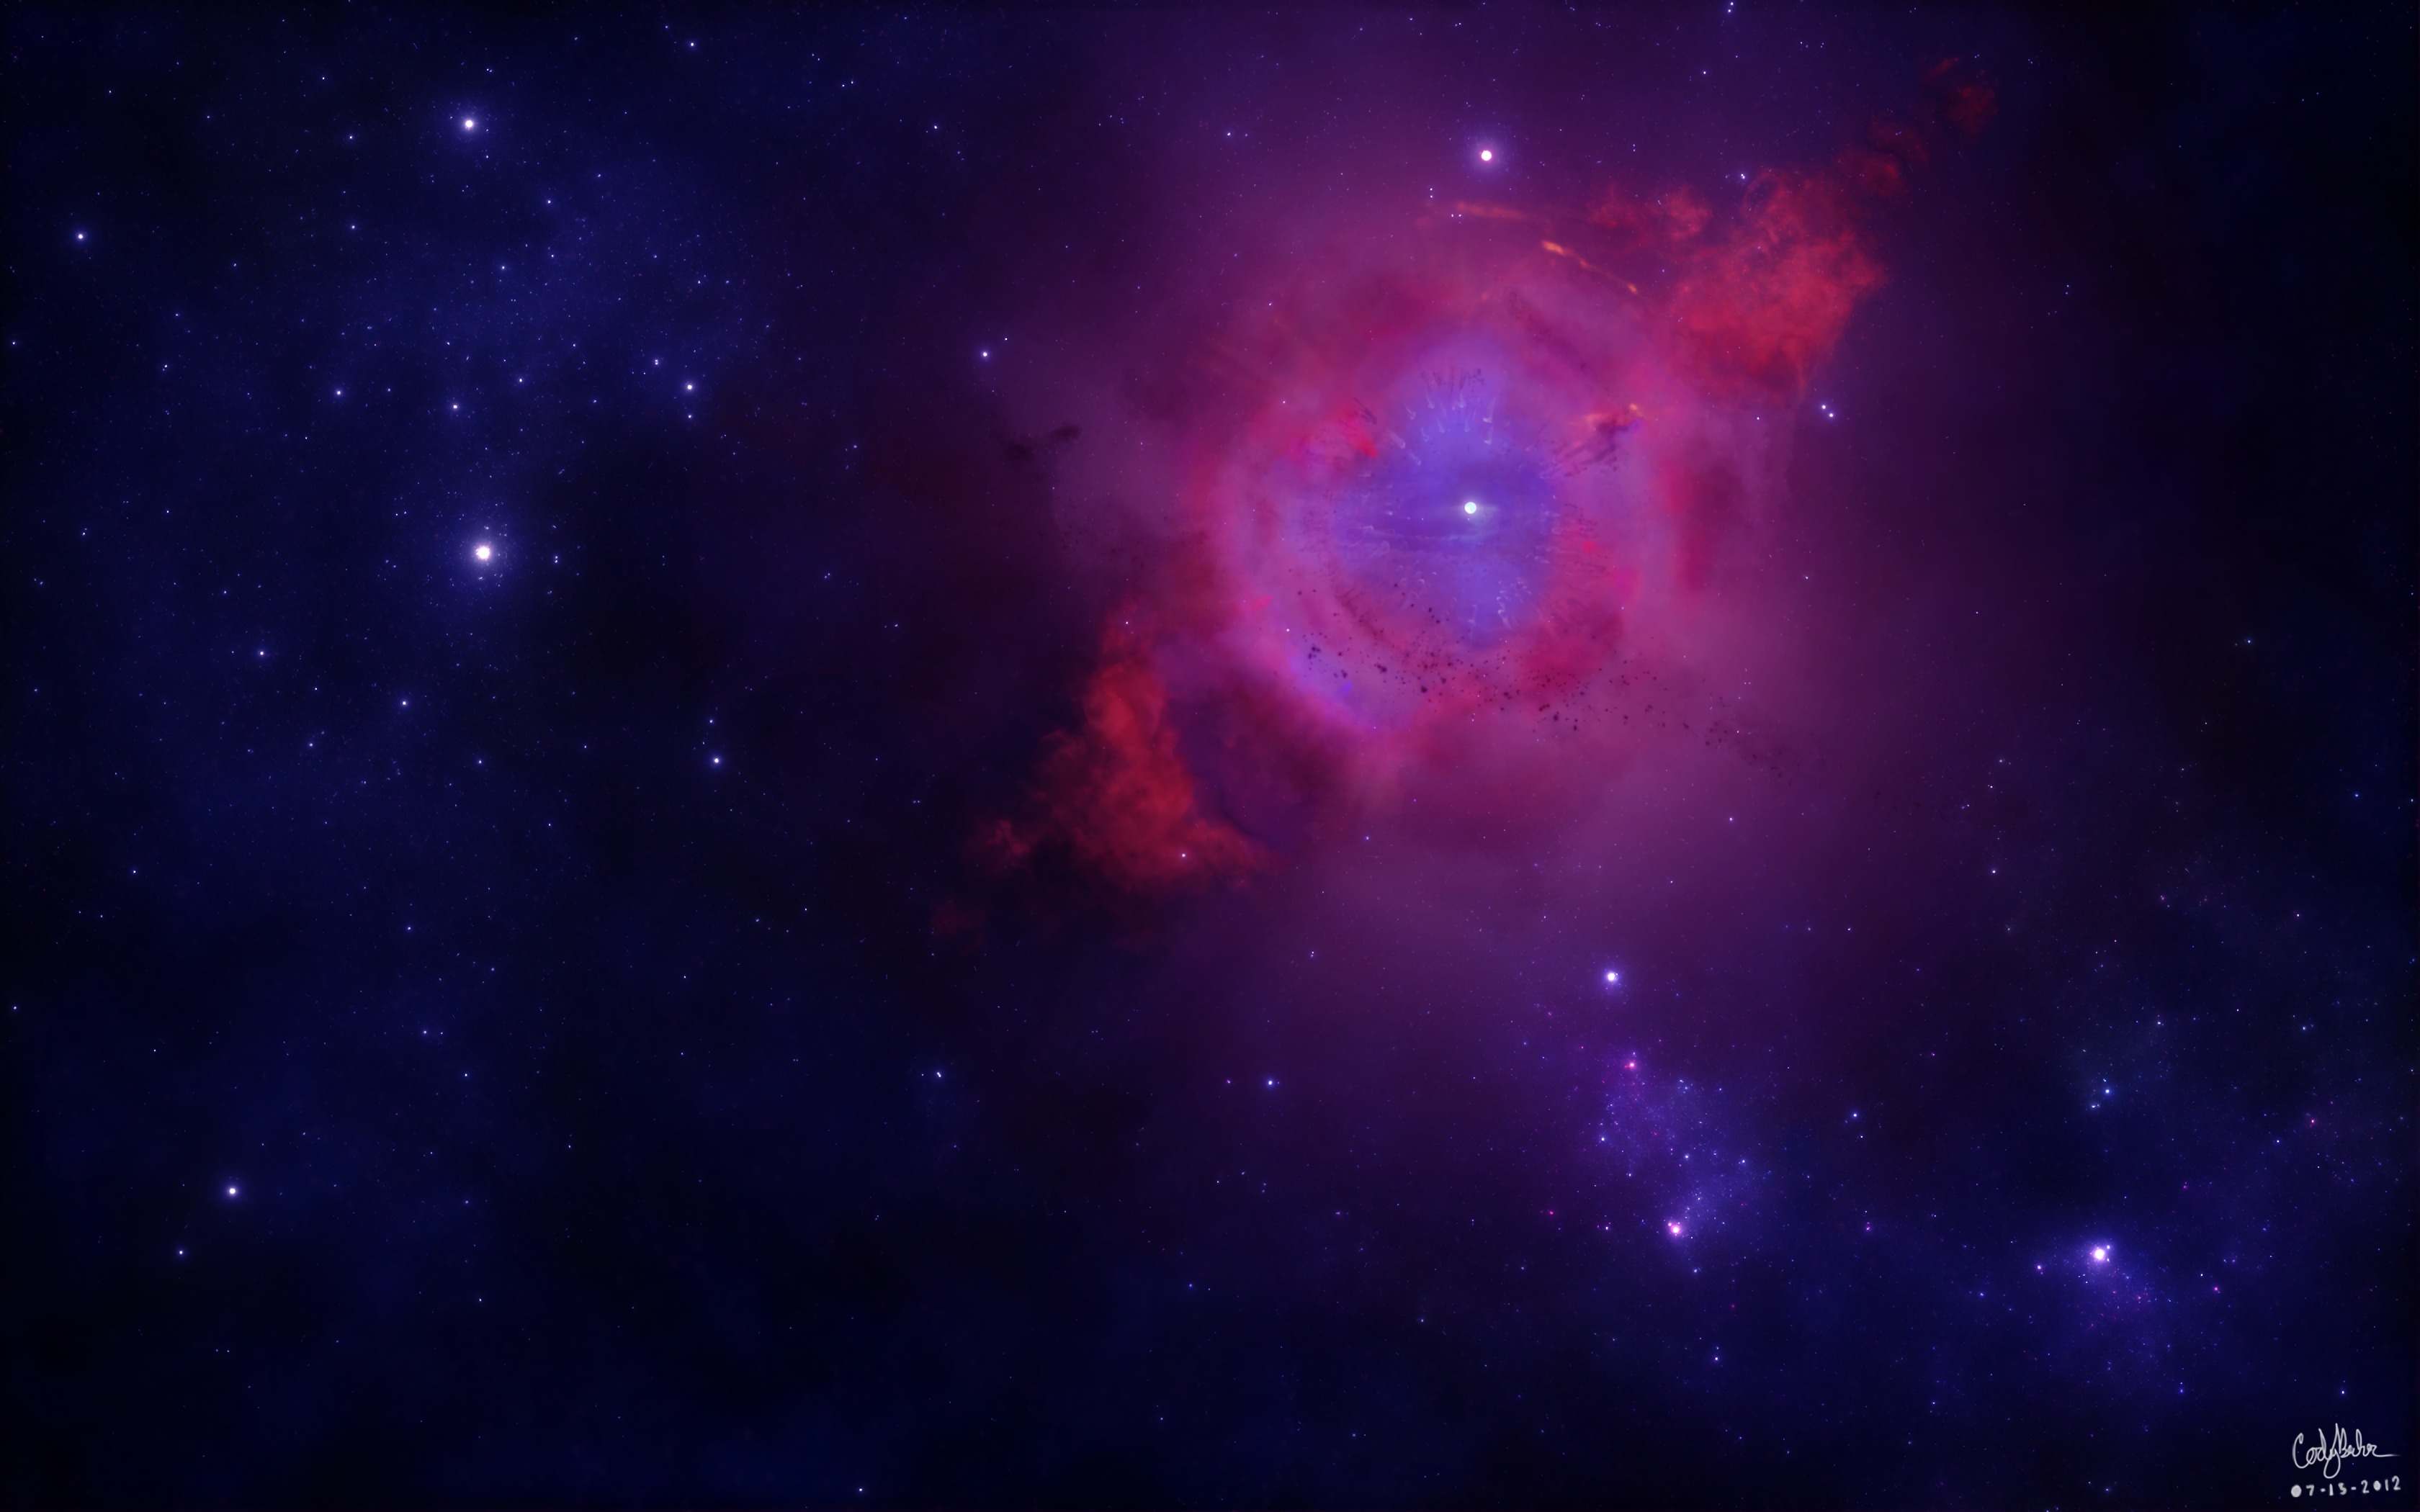 New Lock Screen Wallpapers stars, galaxy, universe, nebula